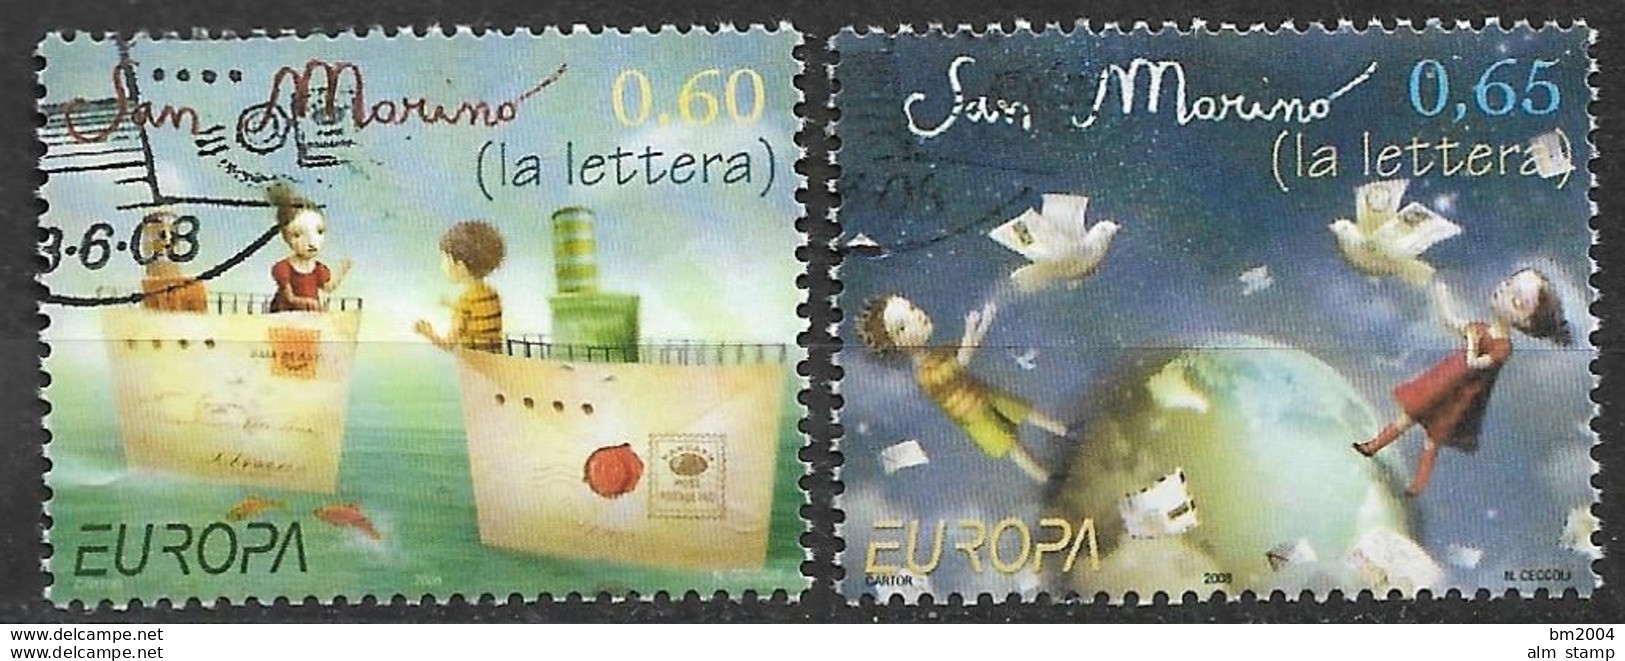 2008 San Marino  MI. 2343-4   Used  Europa "  Der Brief " - 2008